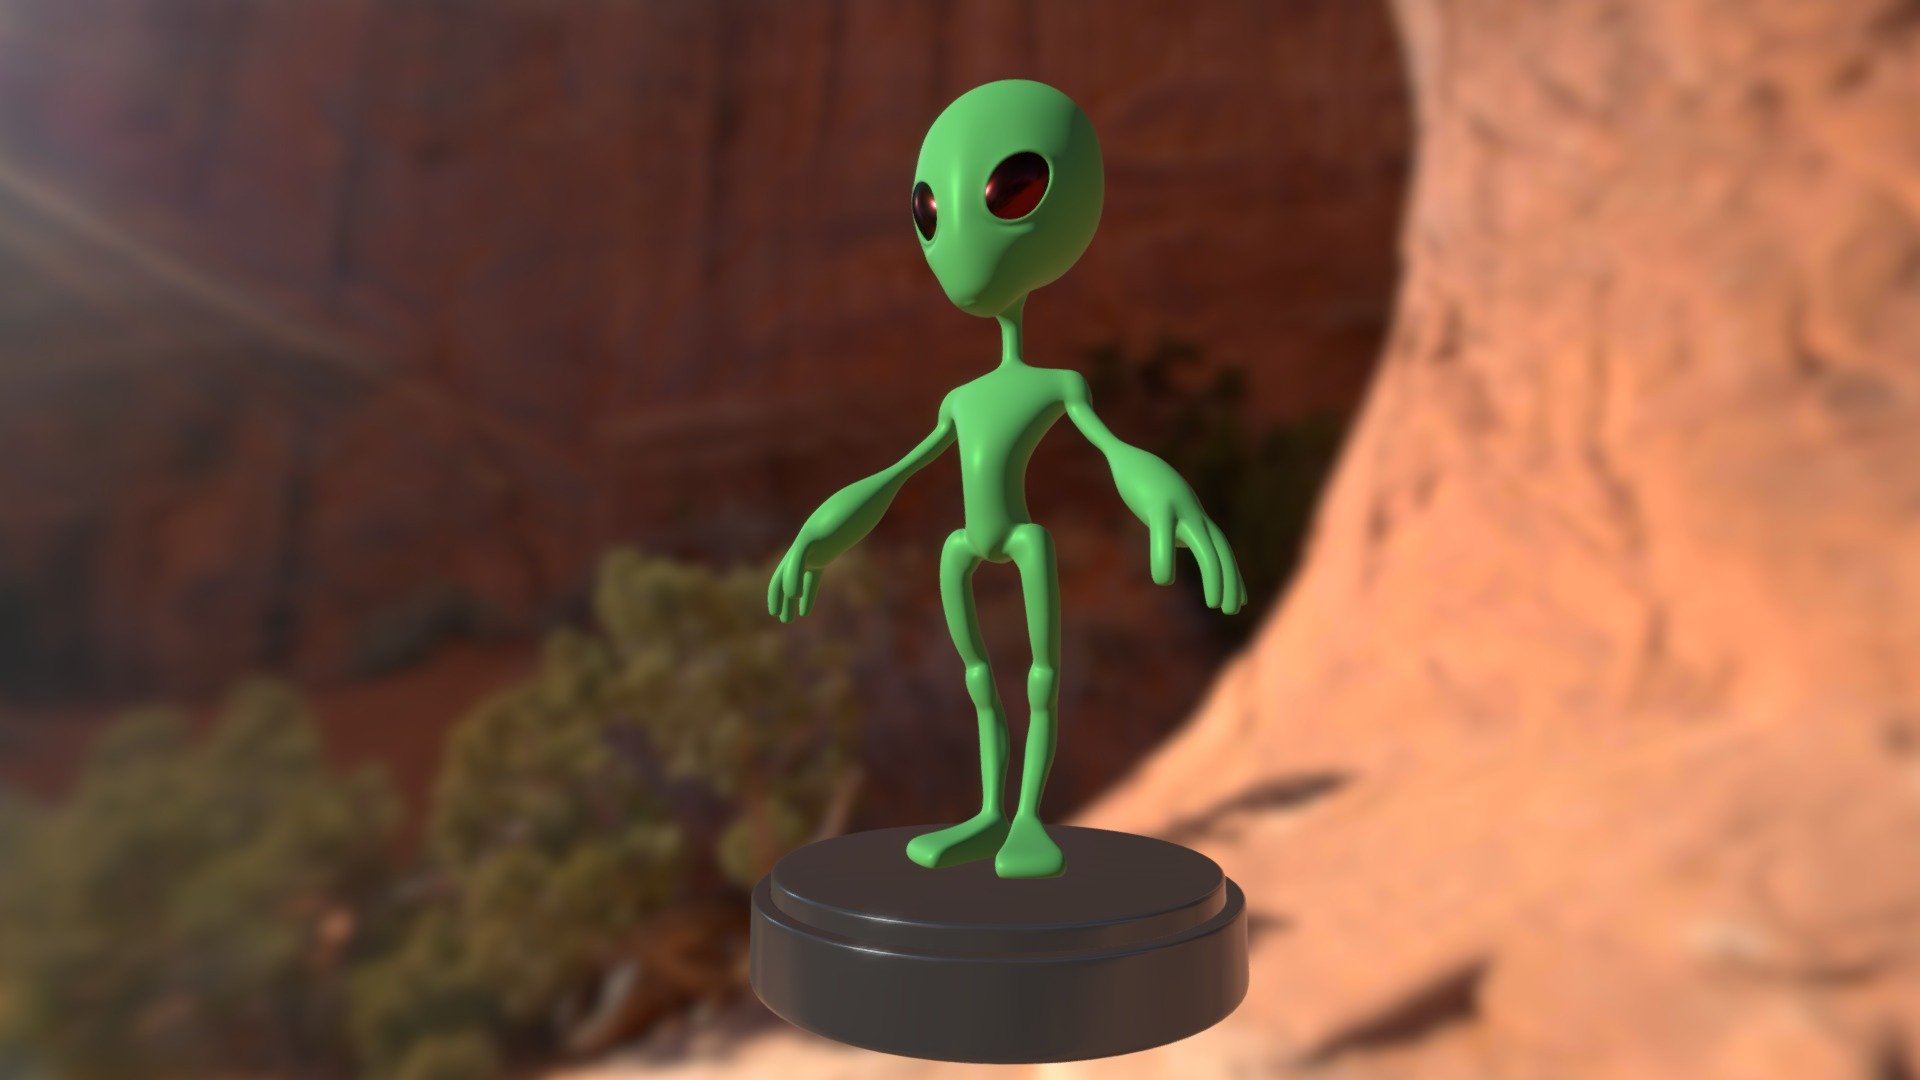 Vengo en son de paz - Alien - 3D model by Nowis 3D (@Nowis3D) 3d model